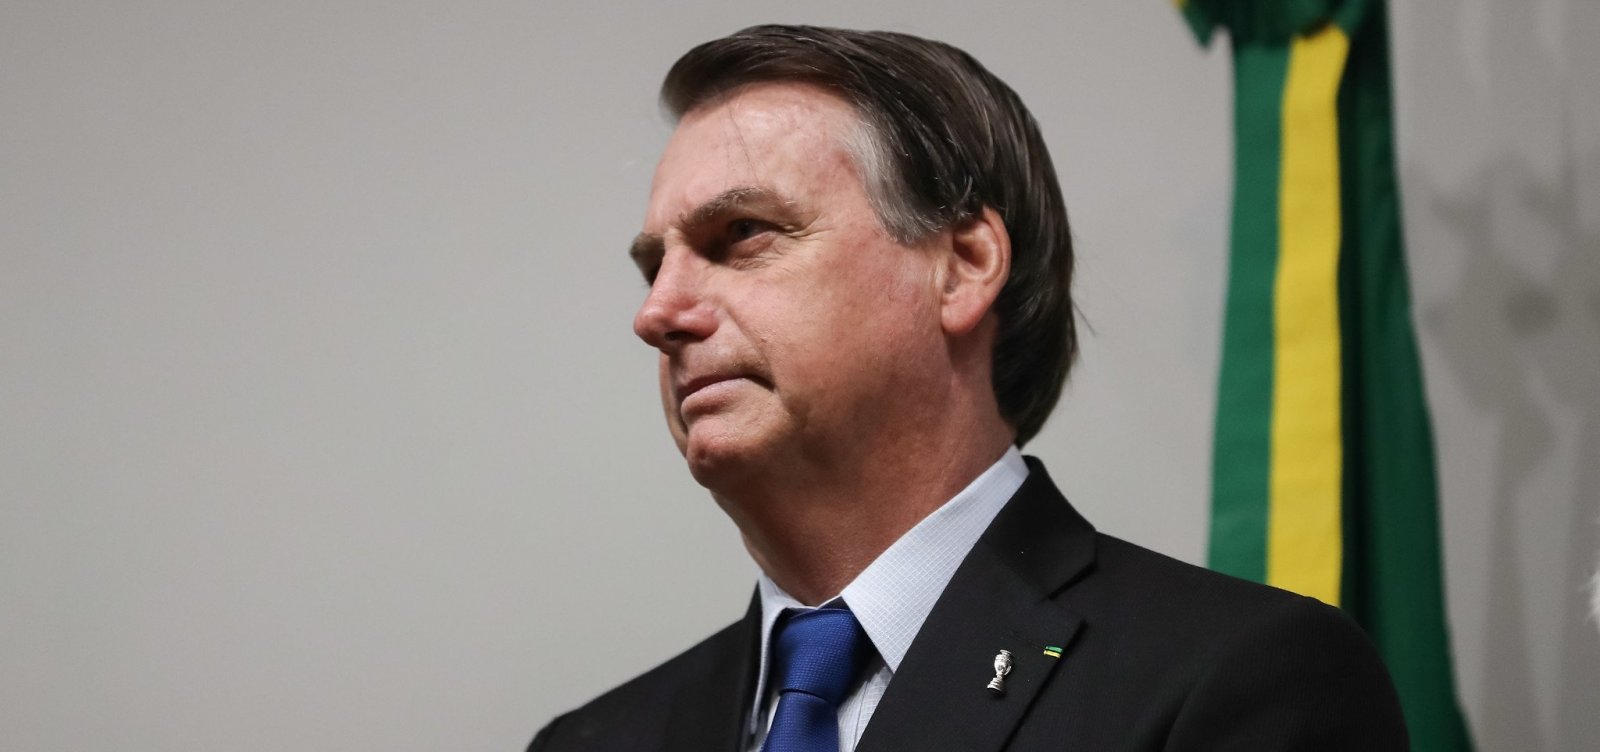 Críticas a Eduardo na embaixada indicam que filho é 'pessoa adequada' ao posto, diz Bolsonaro